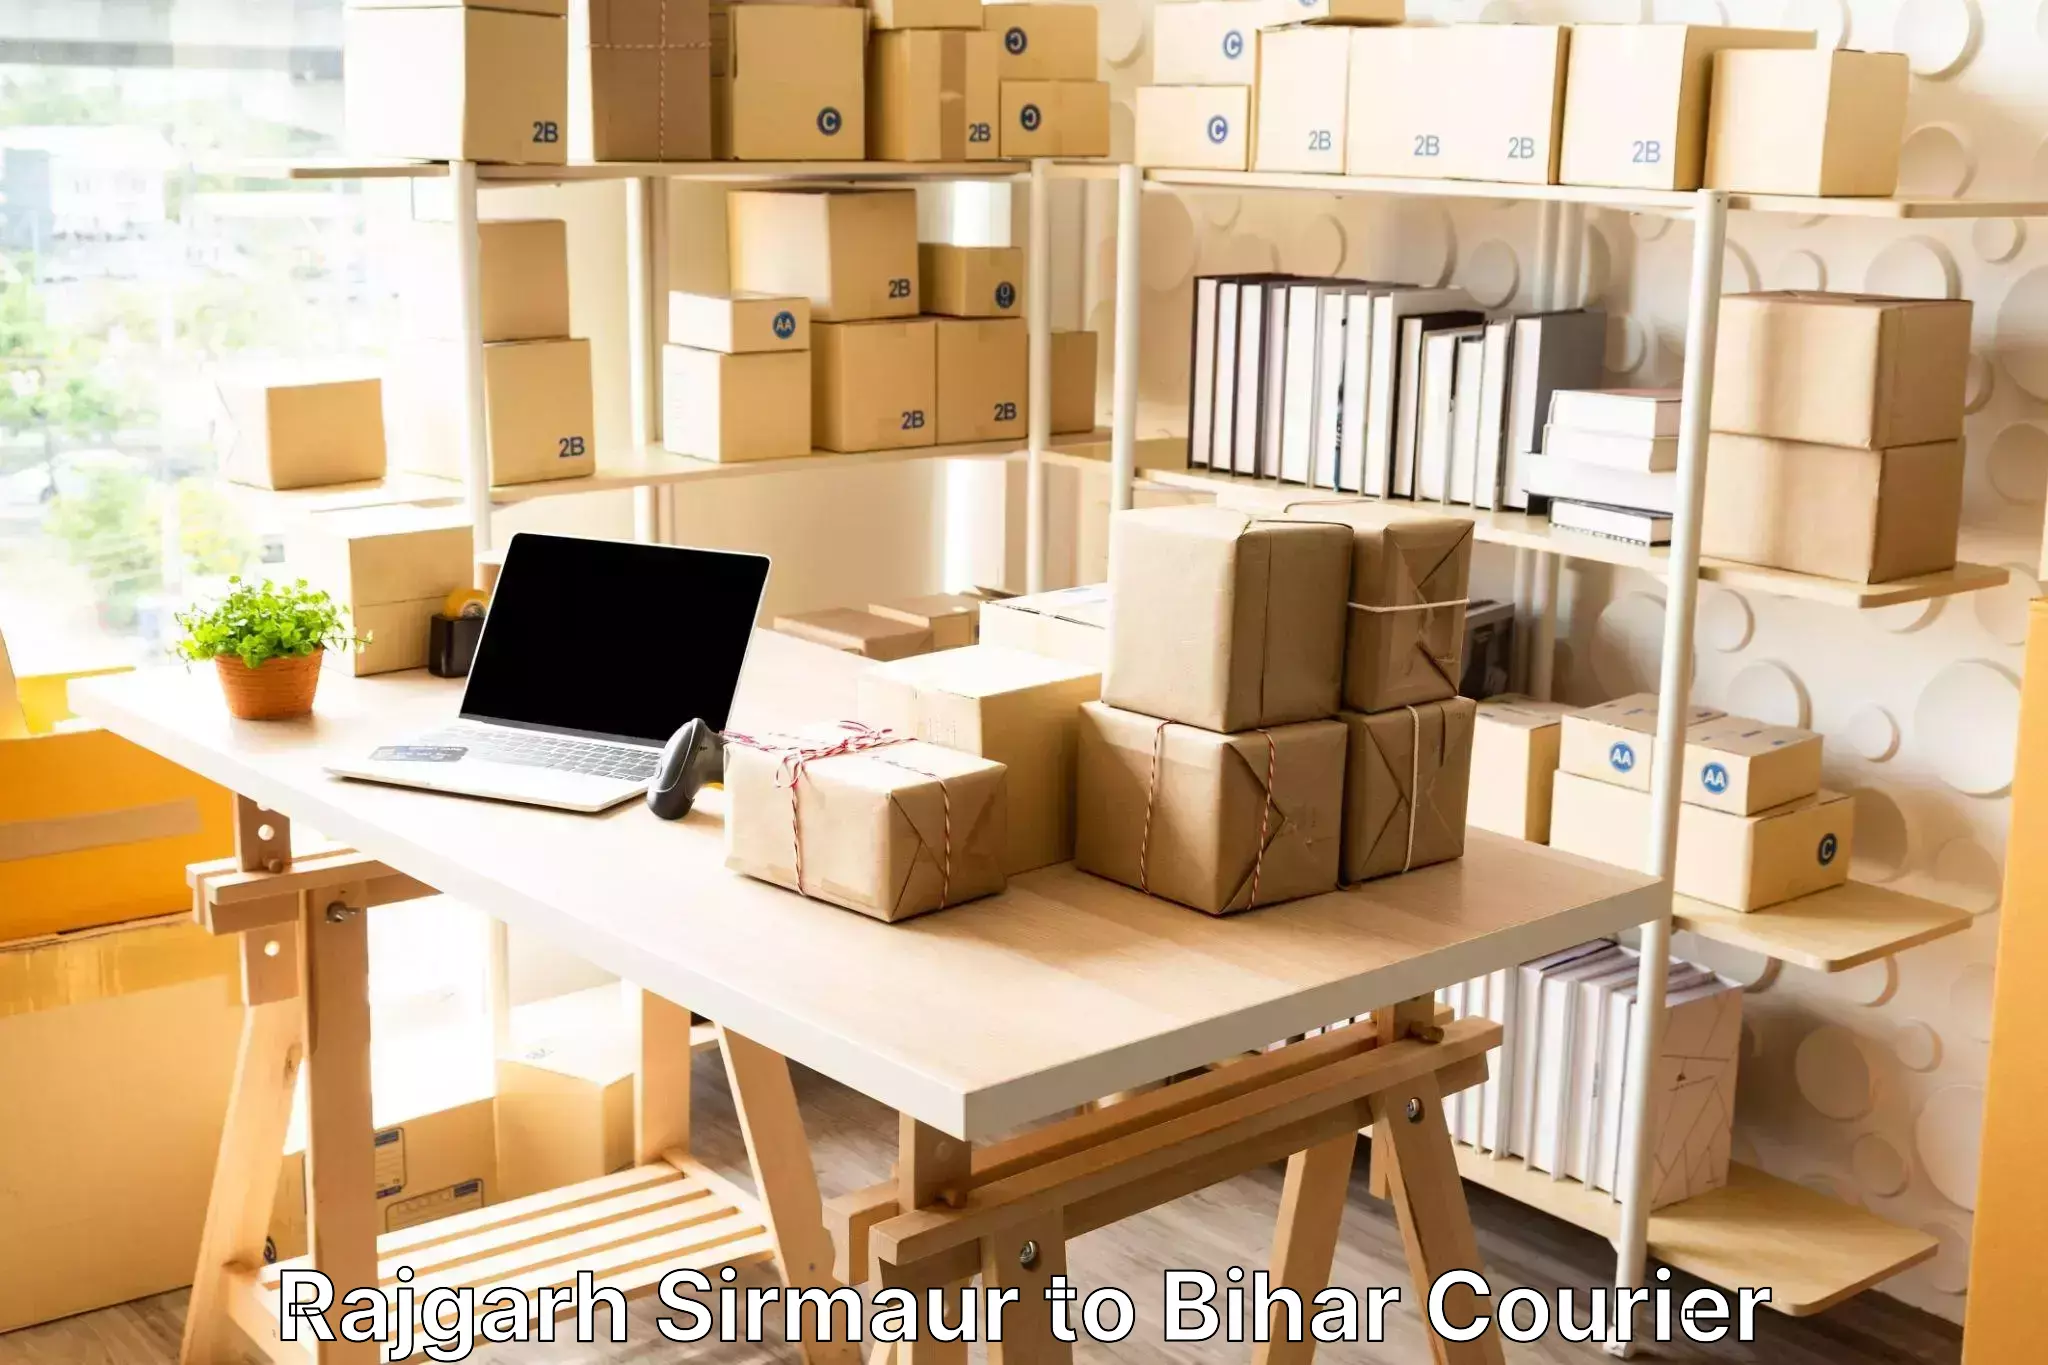 Luggage shipping guide in Rajgarh Sirmaur to Bihar